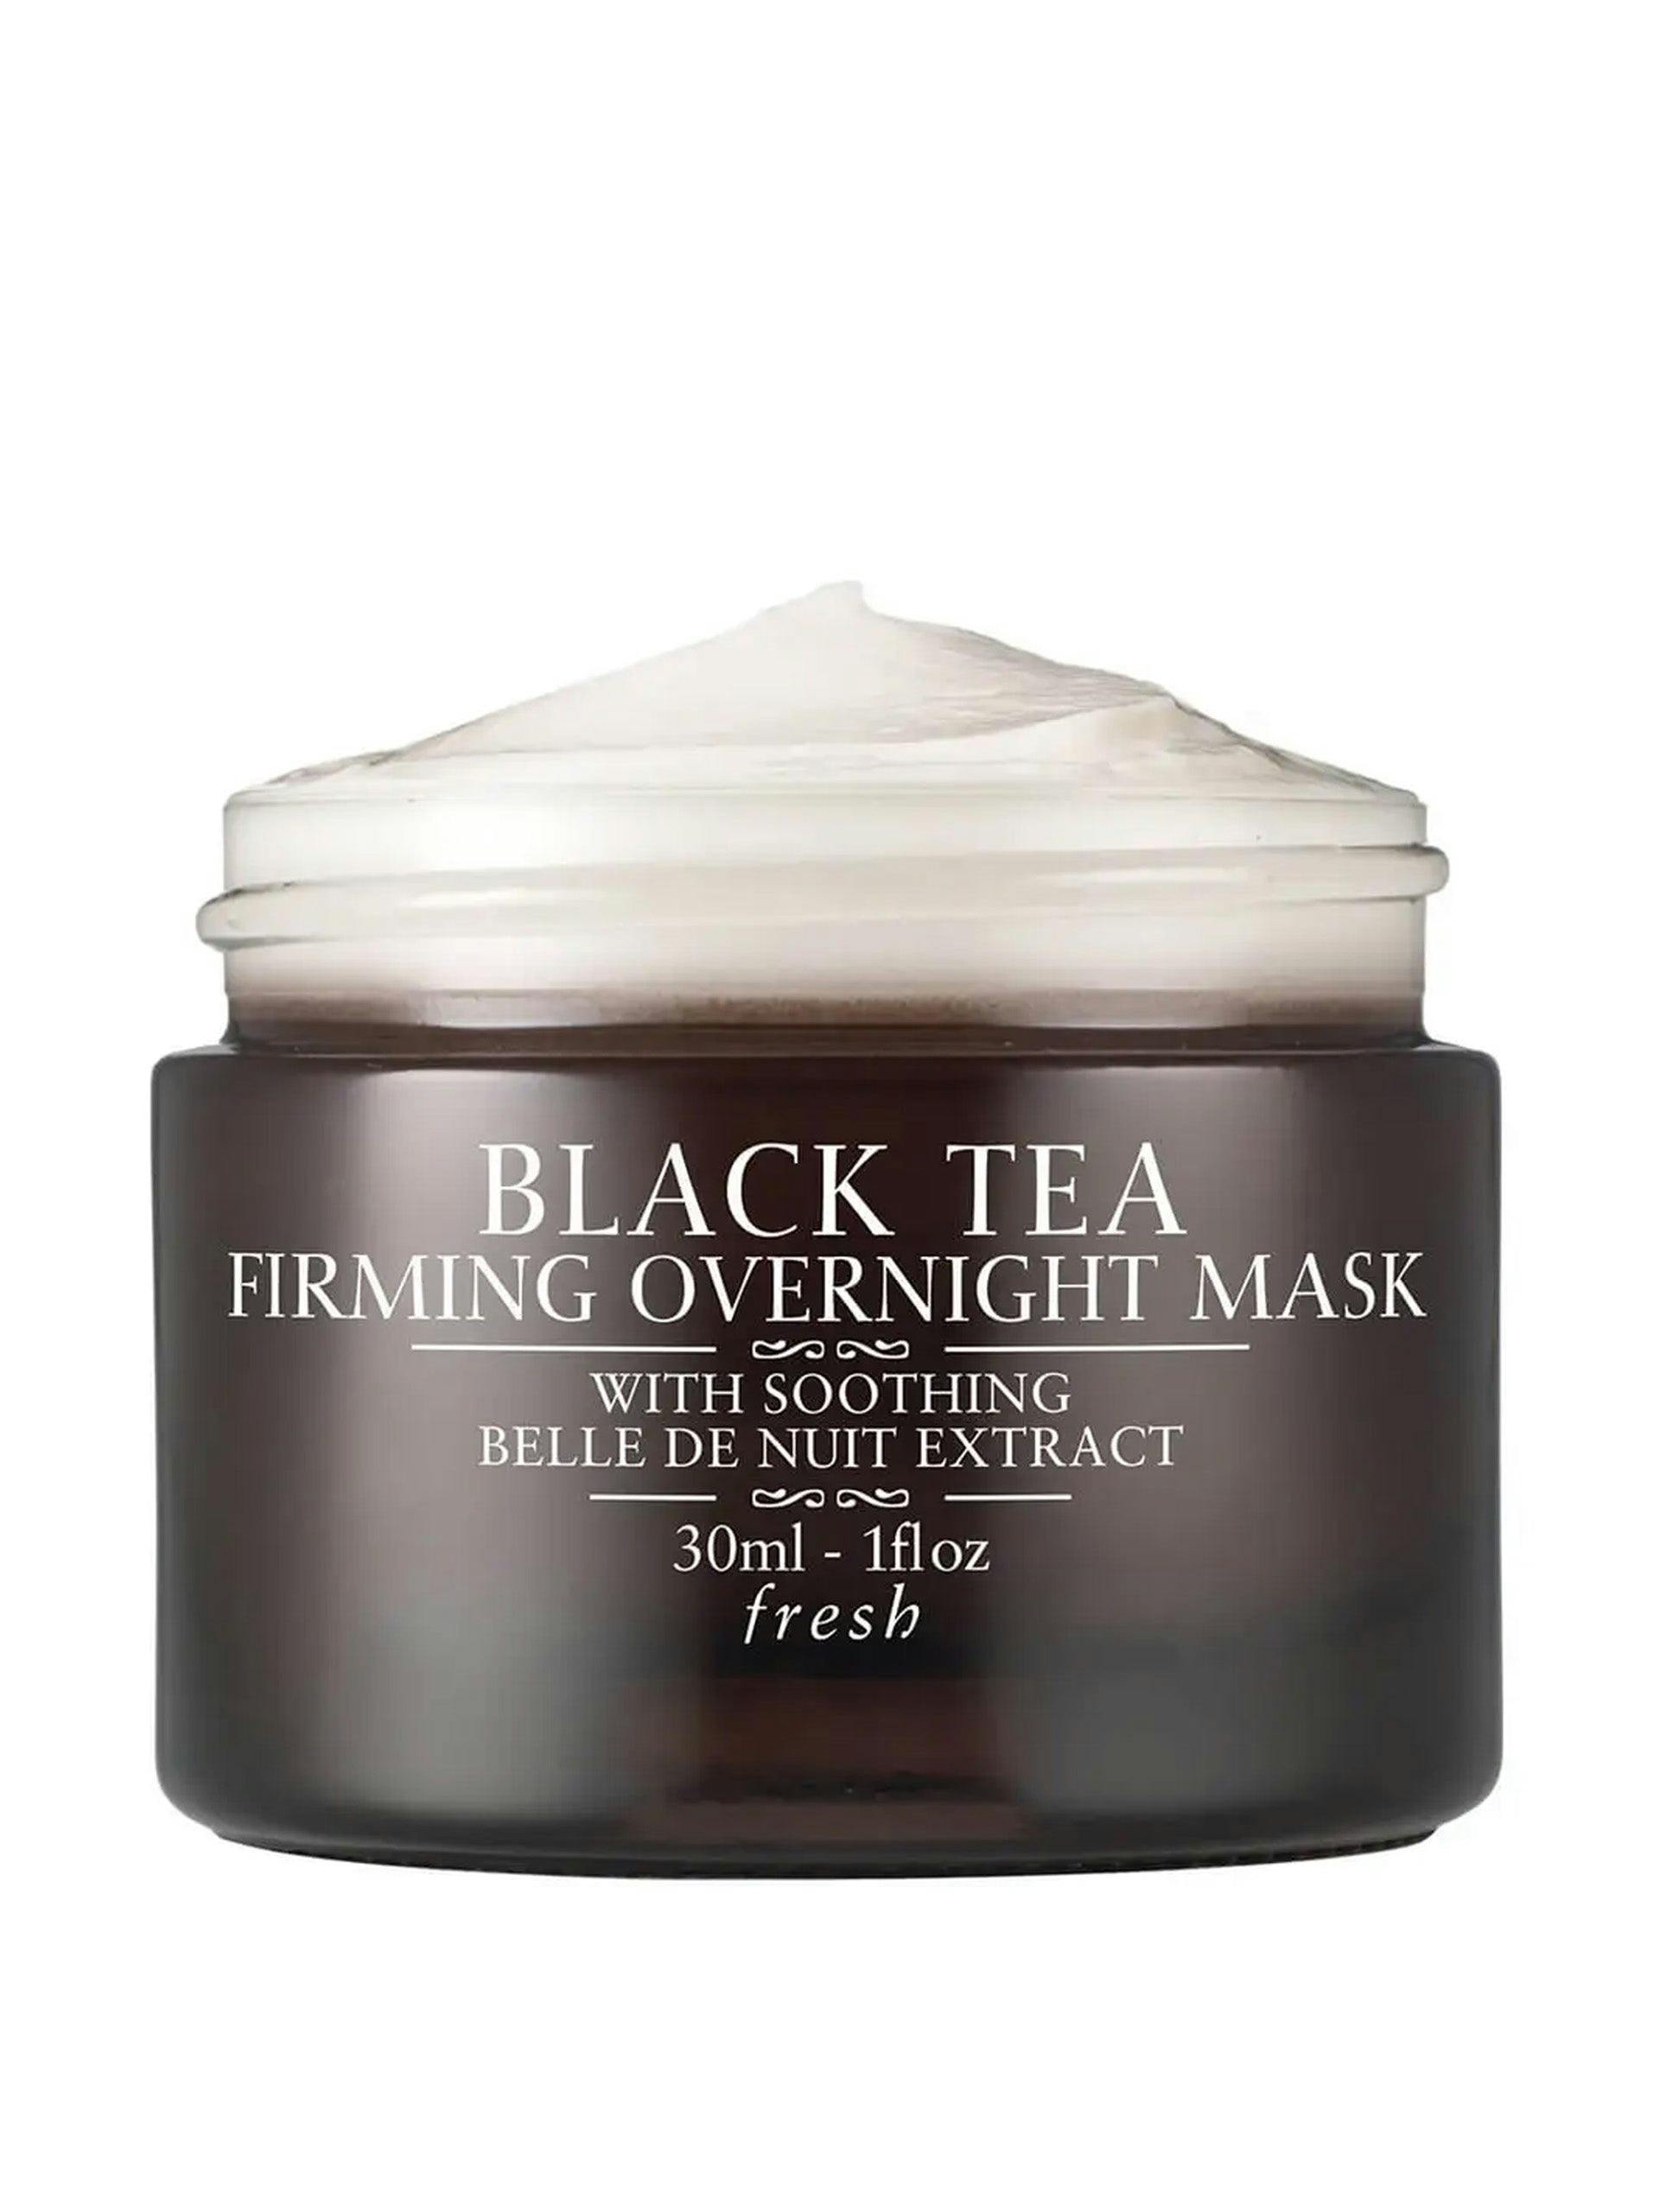 Black tea overnight mask